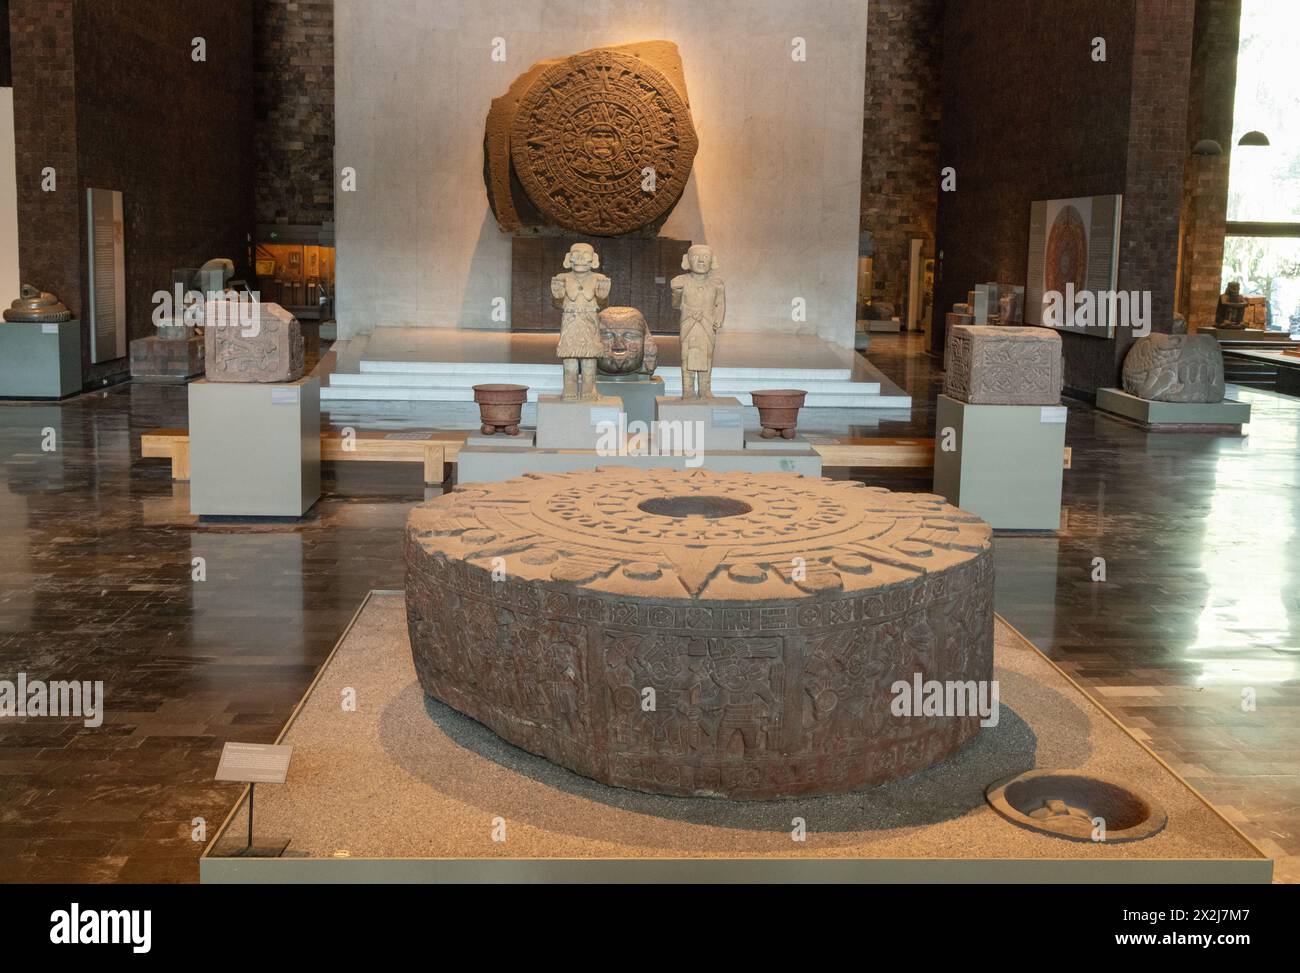 Expositions au Musée national d'anthropologie, Mexique - vue de l'intérieur, y compris la pierre aztèque du soleil montée sur le mur ; Mexico, Mexique Banque D'Images